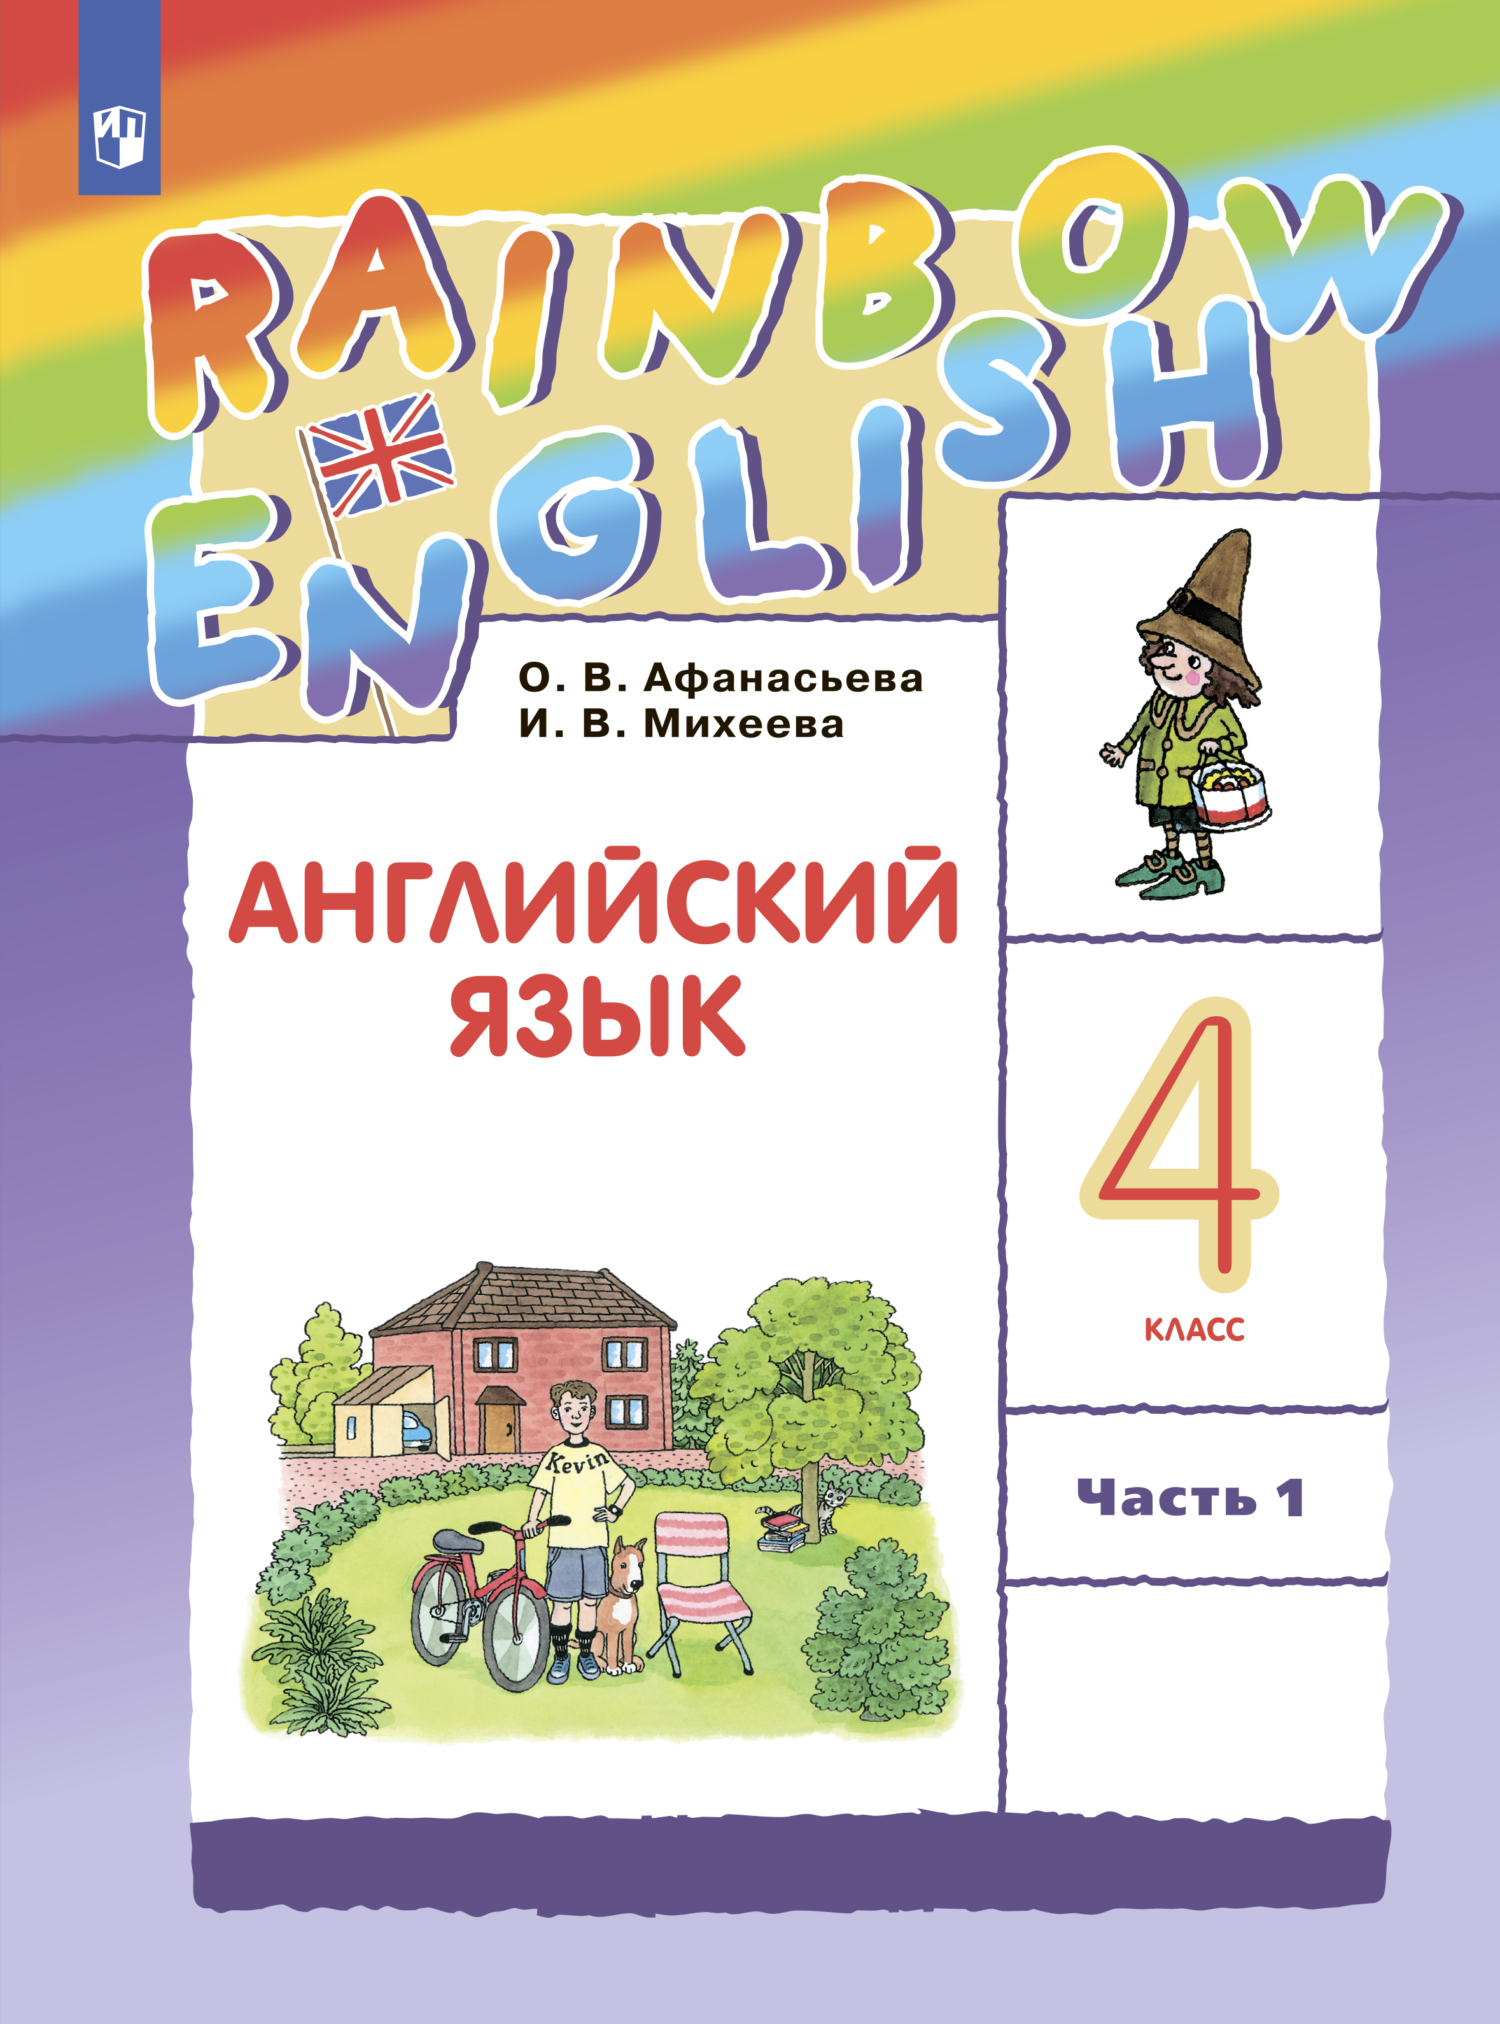 2 Класс английский язык Rainbow English Афанасьева Михеева. Книга английский язык 2 класс. Rainbow English 2 класс учебник. Книга английский язык 2 кл Рейнбоу.